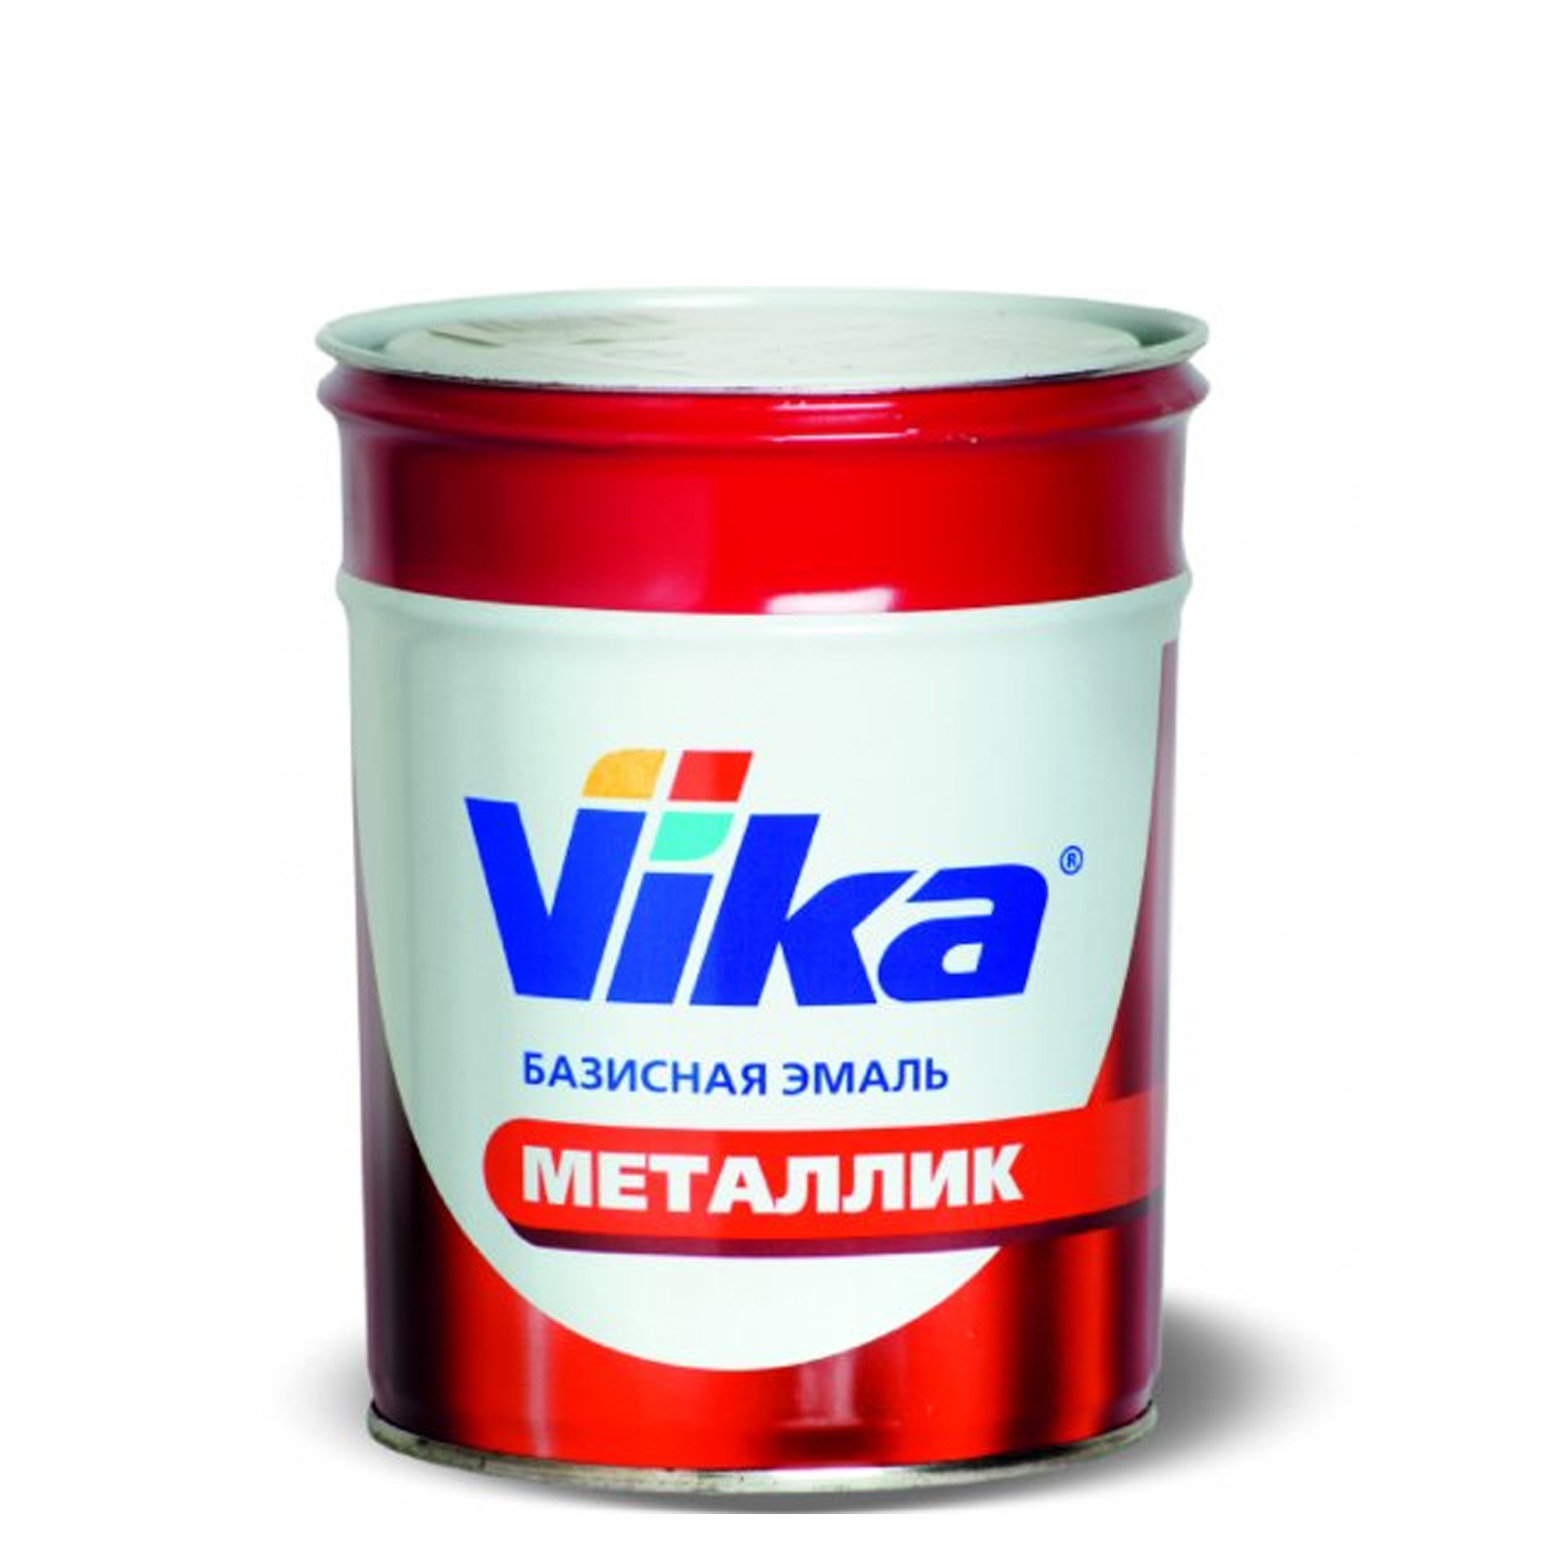 Фото 1 - Автоэмаль Металлик, цвет 120 Майя, профессиональная базовая, - 0,9 кг Vika/Вика.